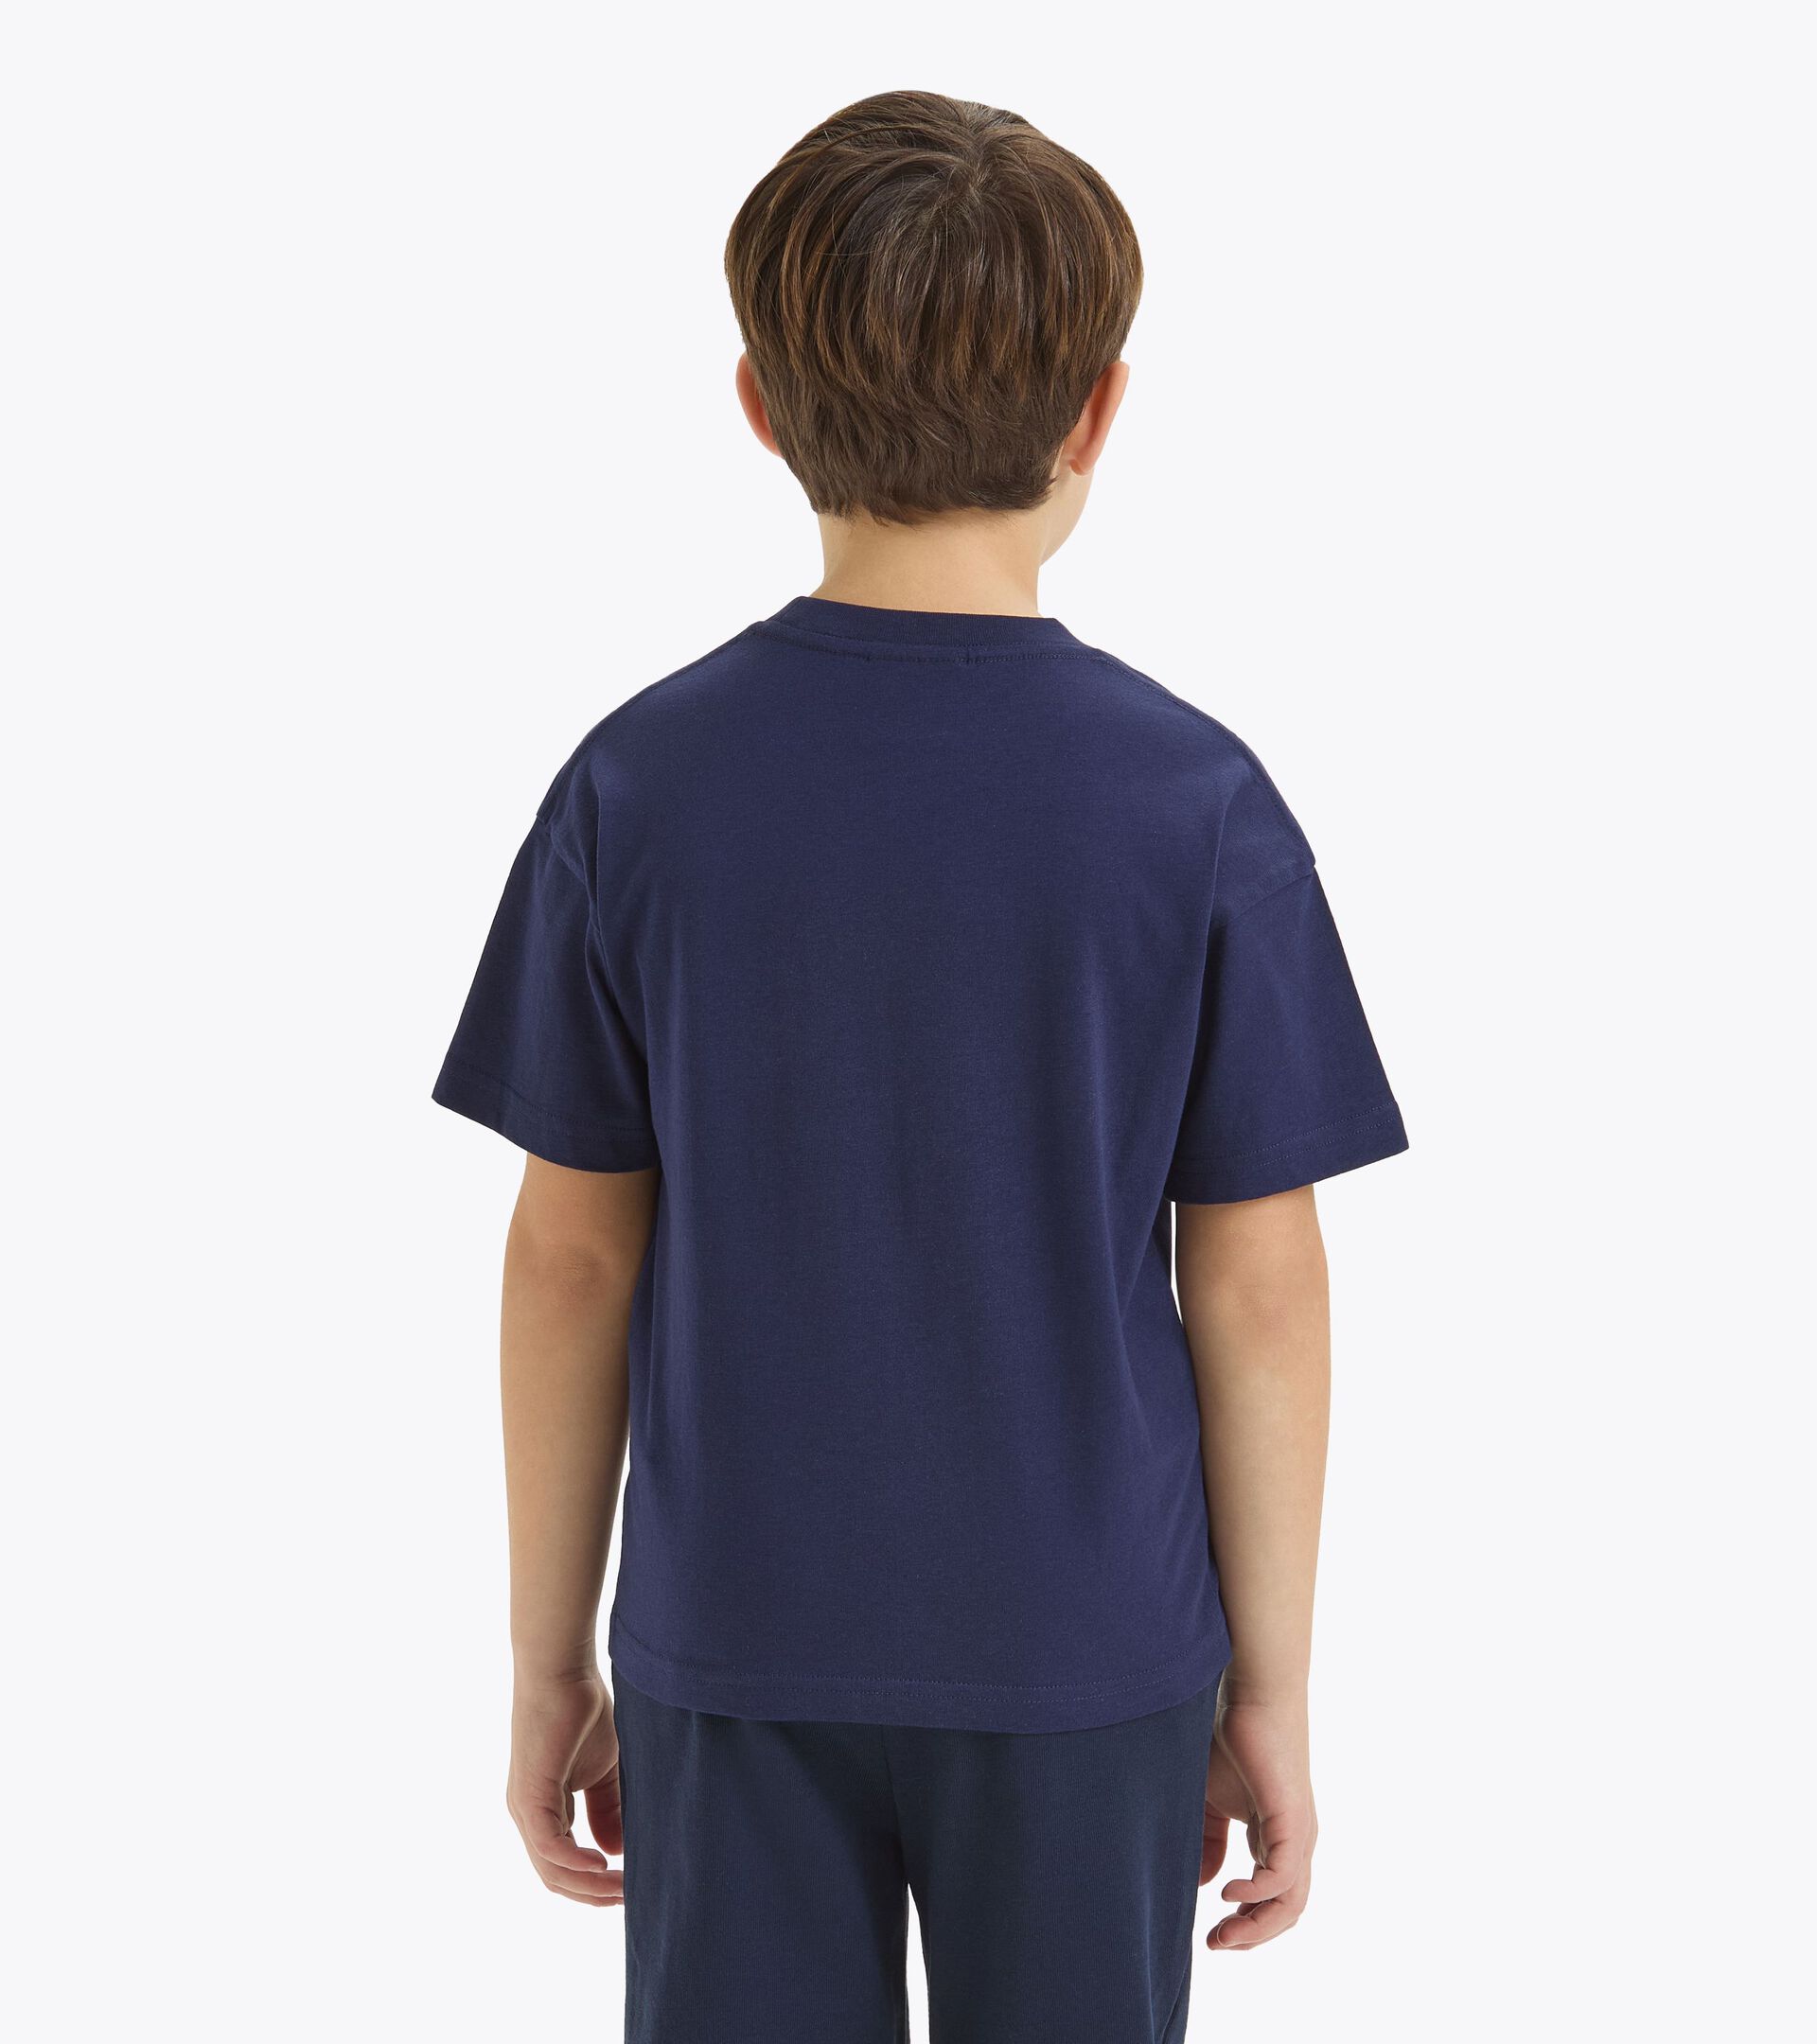 Sportliches T-Shirt - Kinder
 JU.T-SHIRT SS BL MARINEBLAU - Diadora